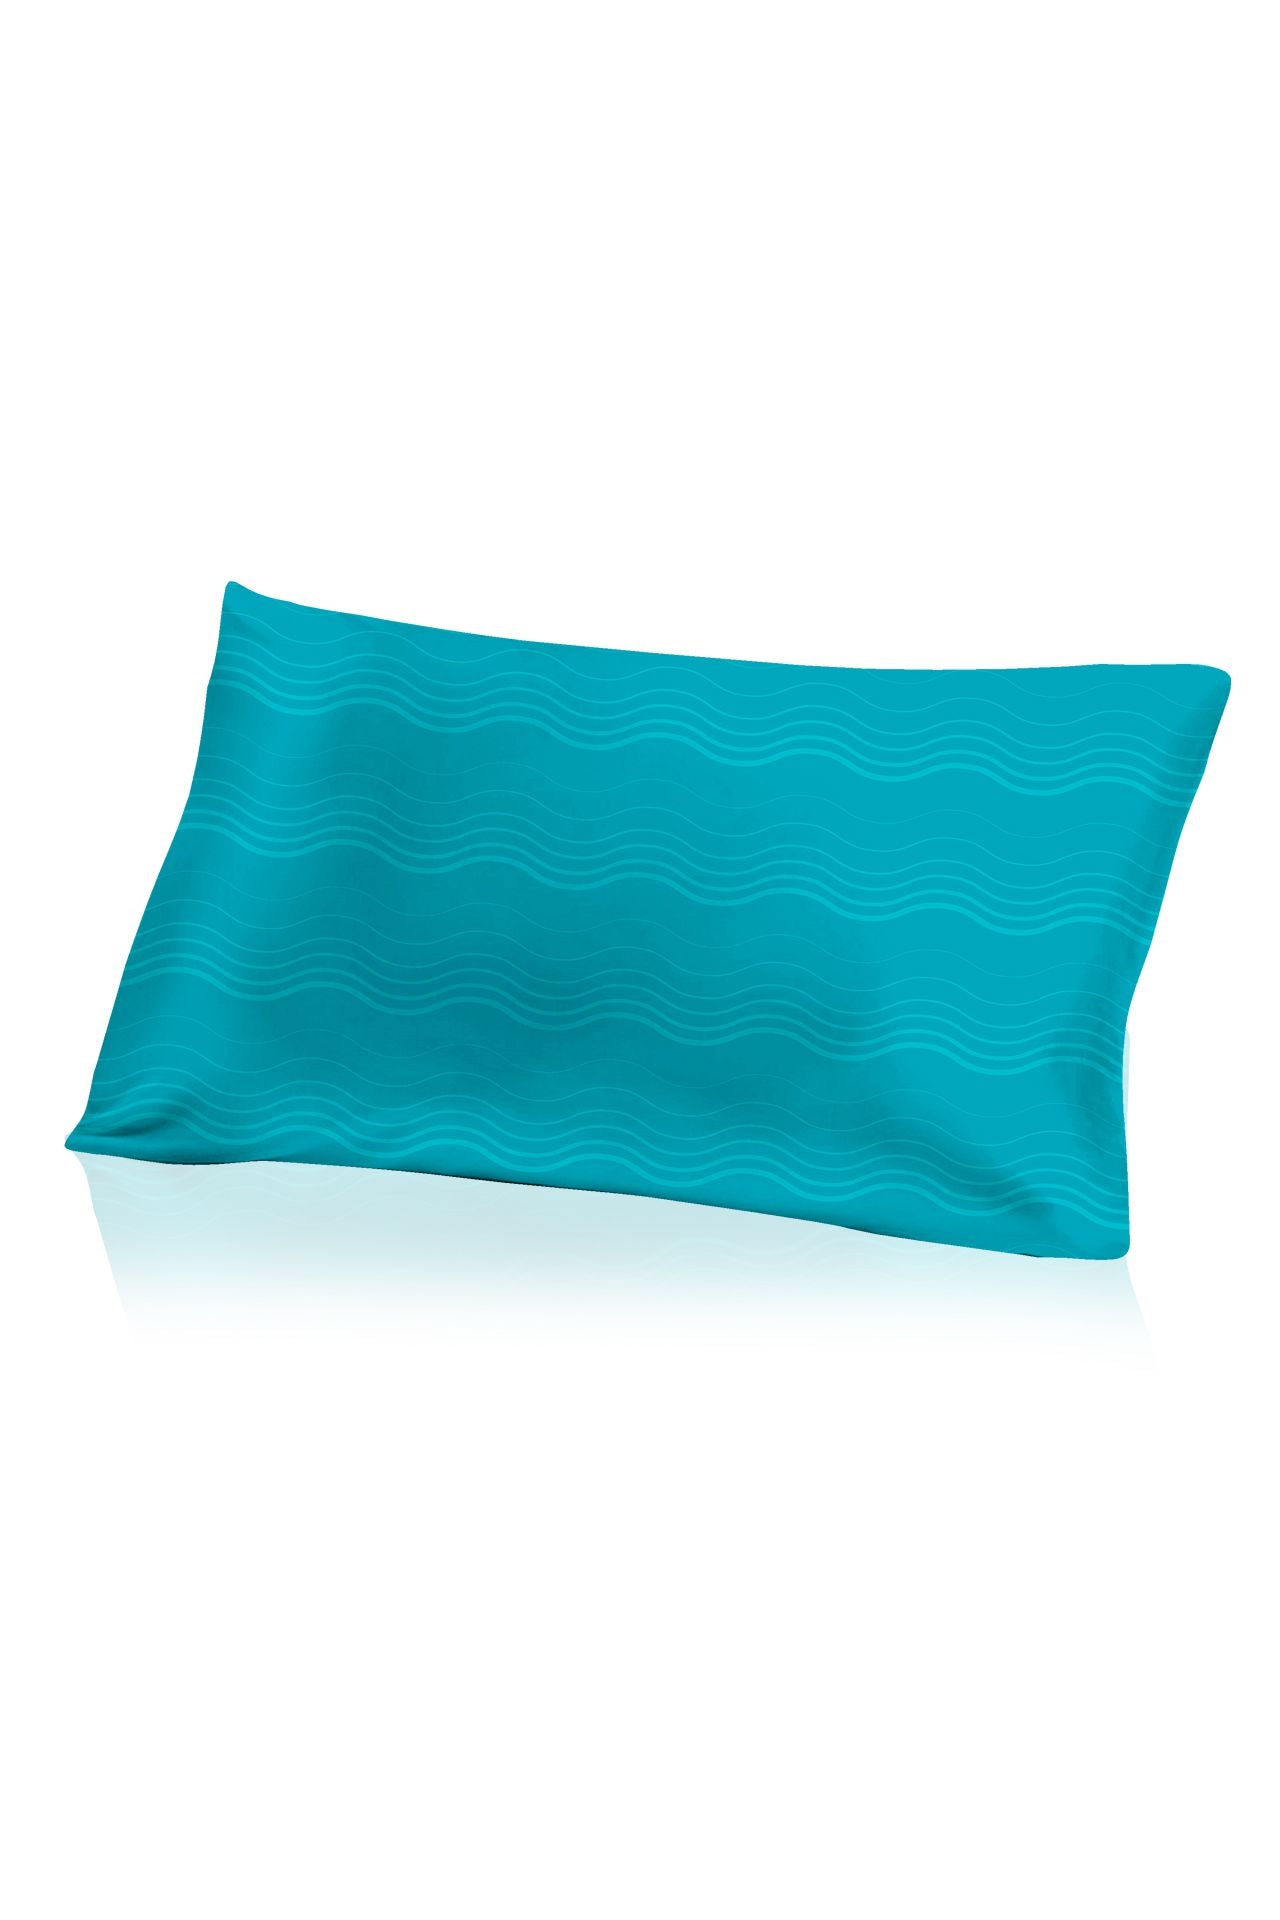 "blue silk pillowcase" "decorative pillow case" "Kyle X Shahida" "designer throw pillows"